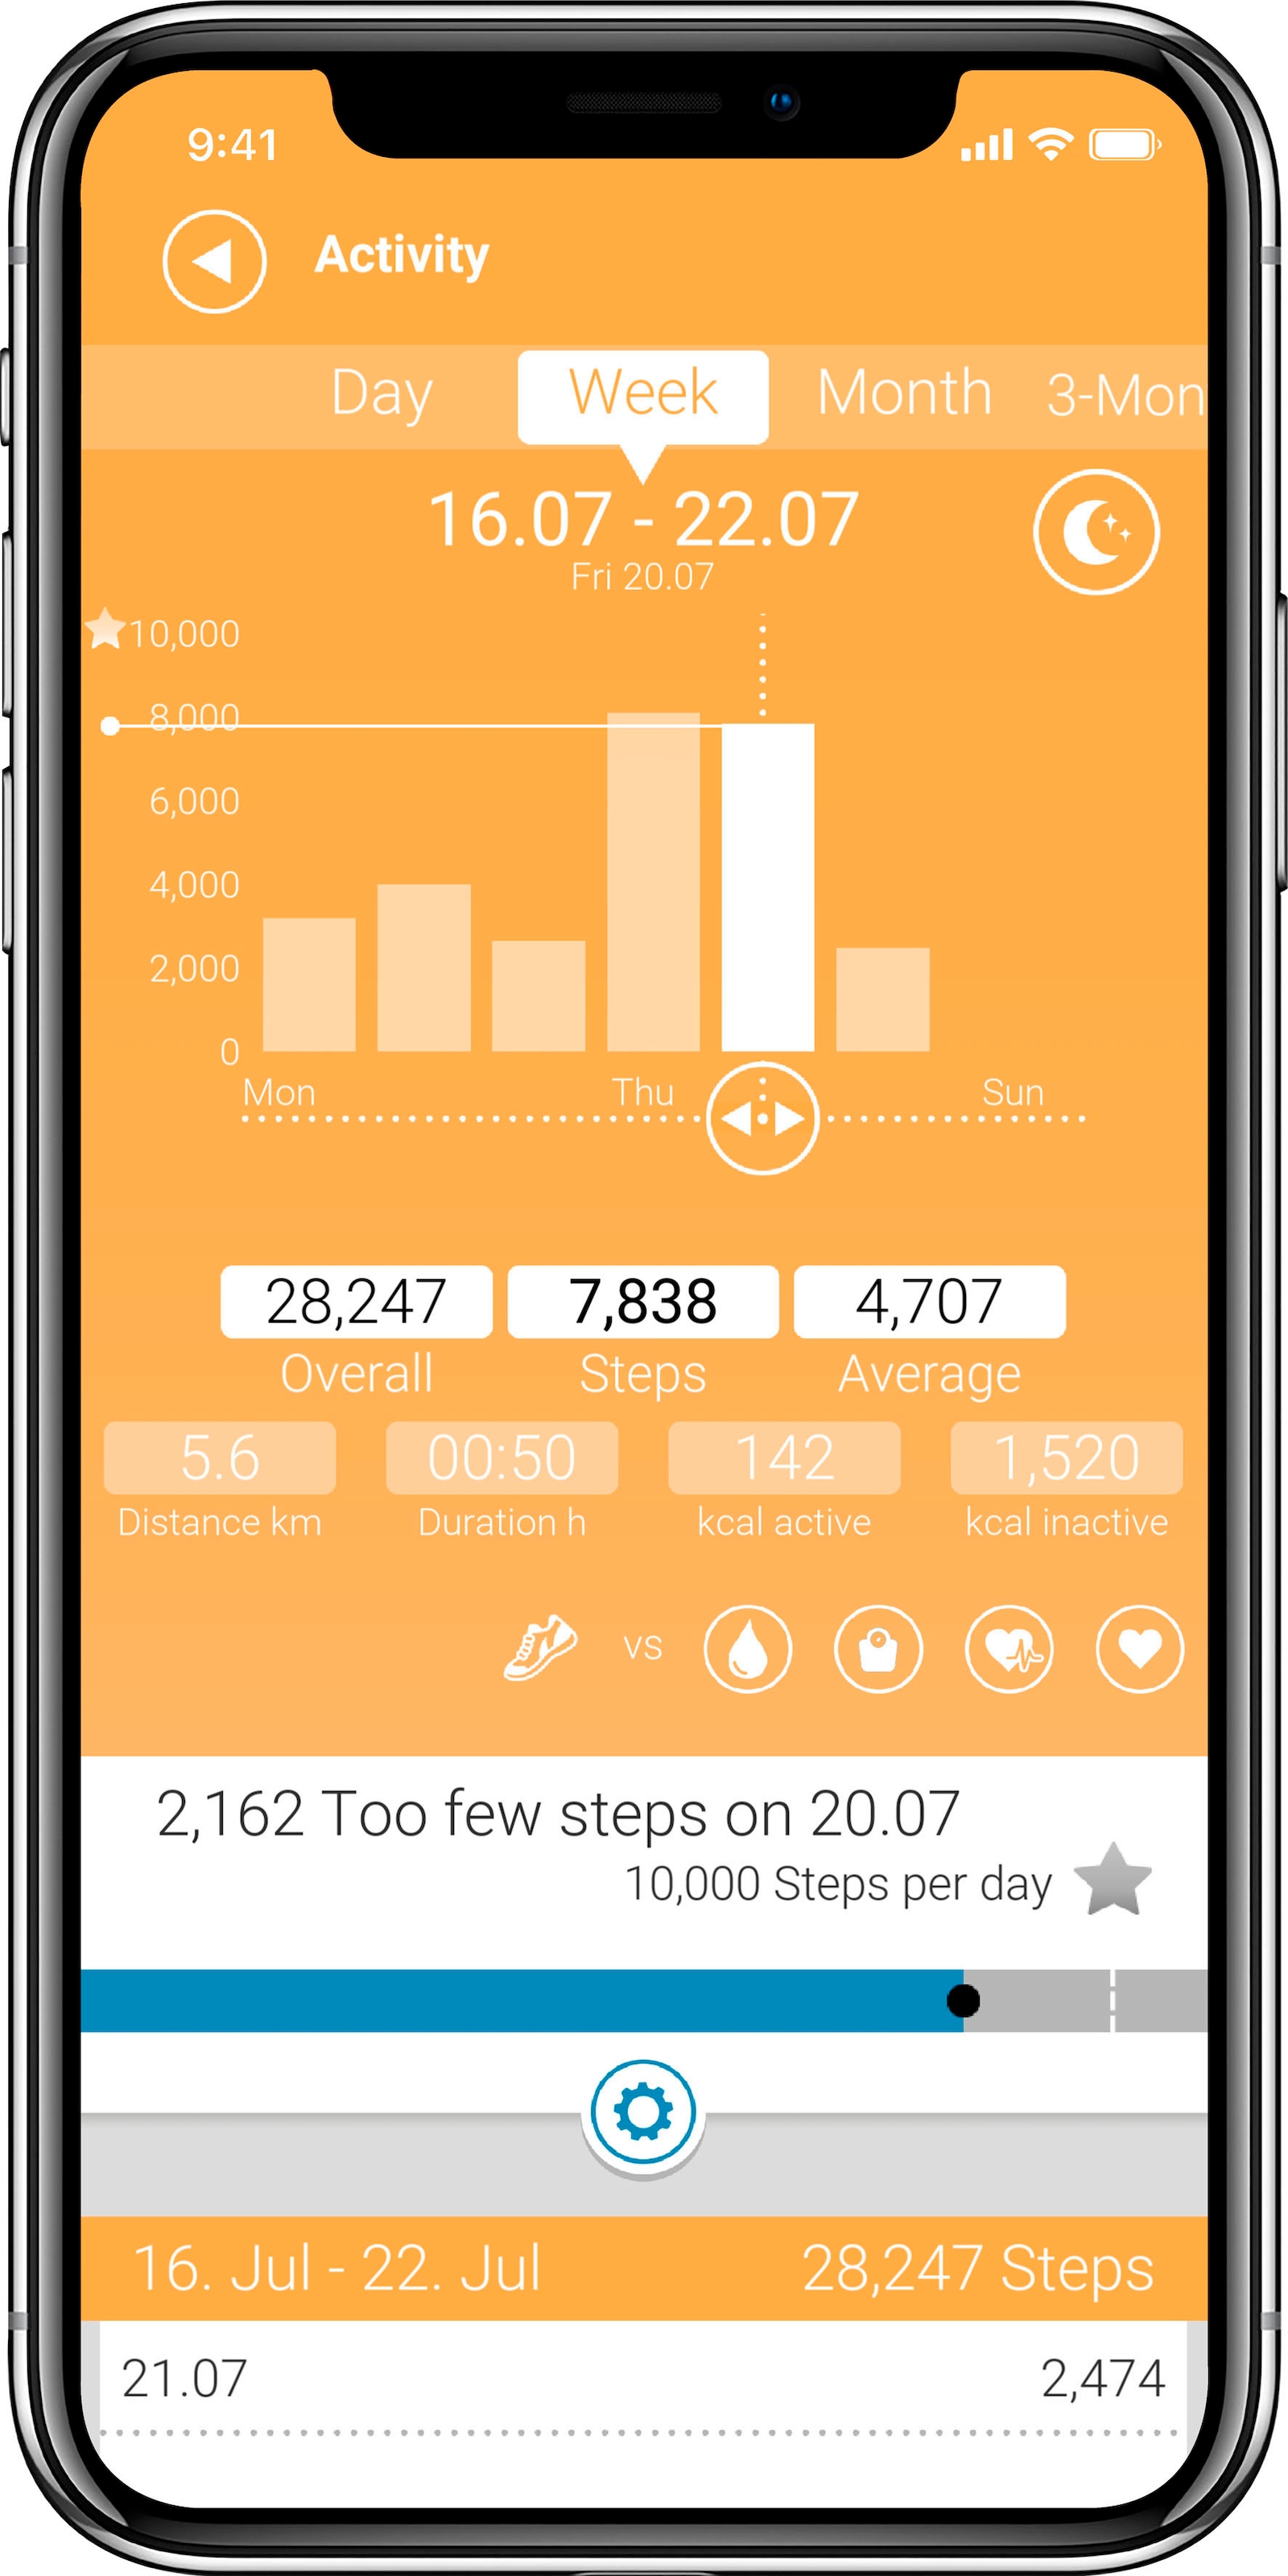 Medisana Activity Tracker »Vifit Run«, (mit Armband), kostenfreie VitaDock+ App